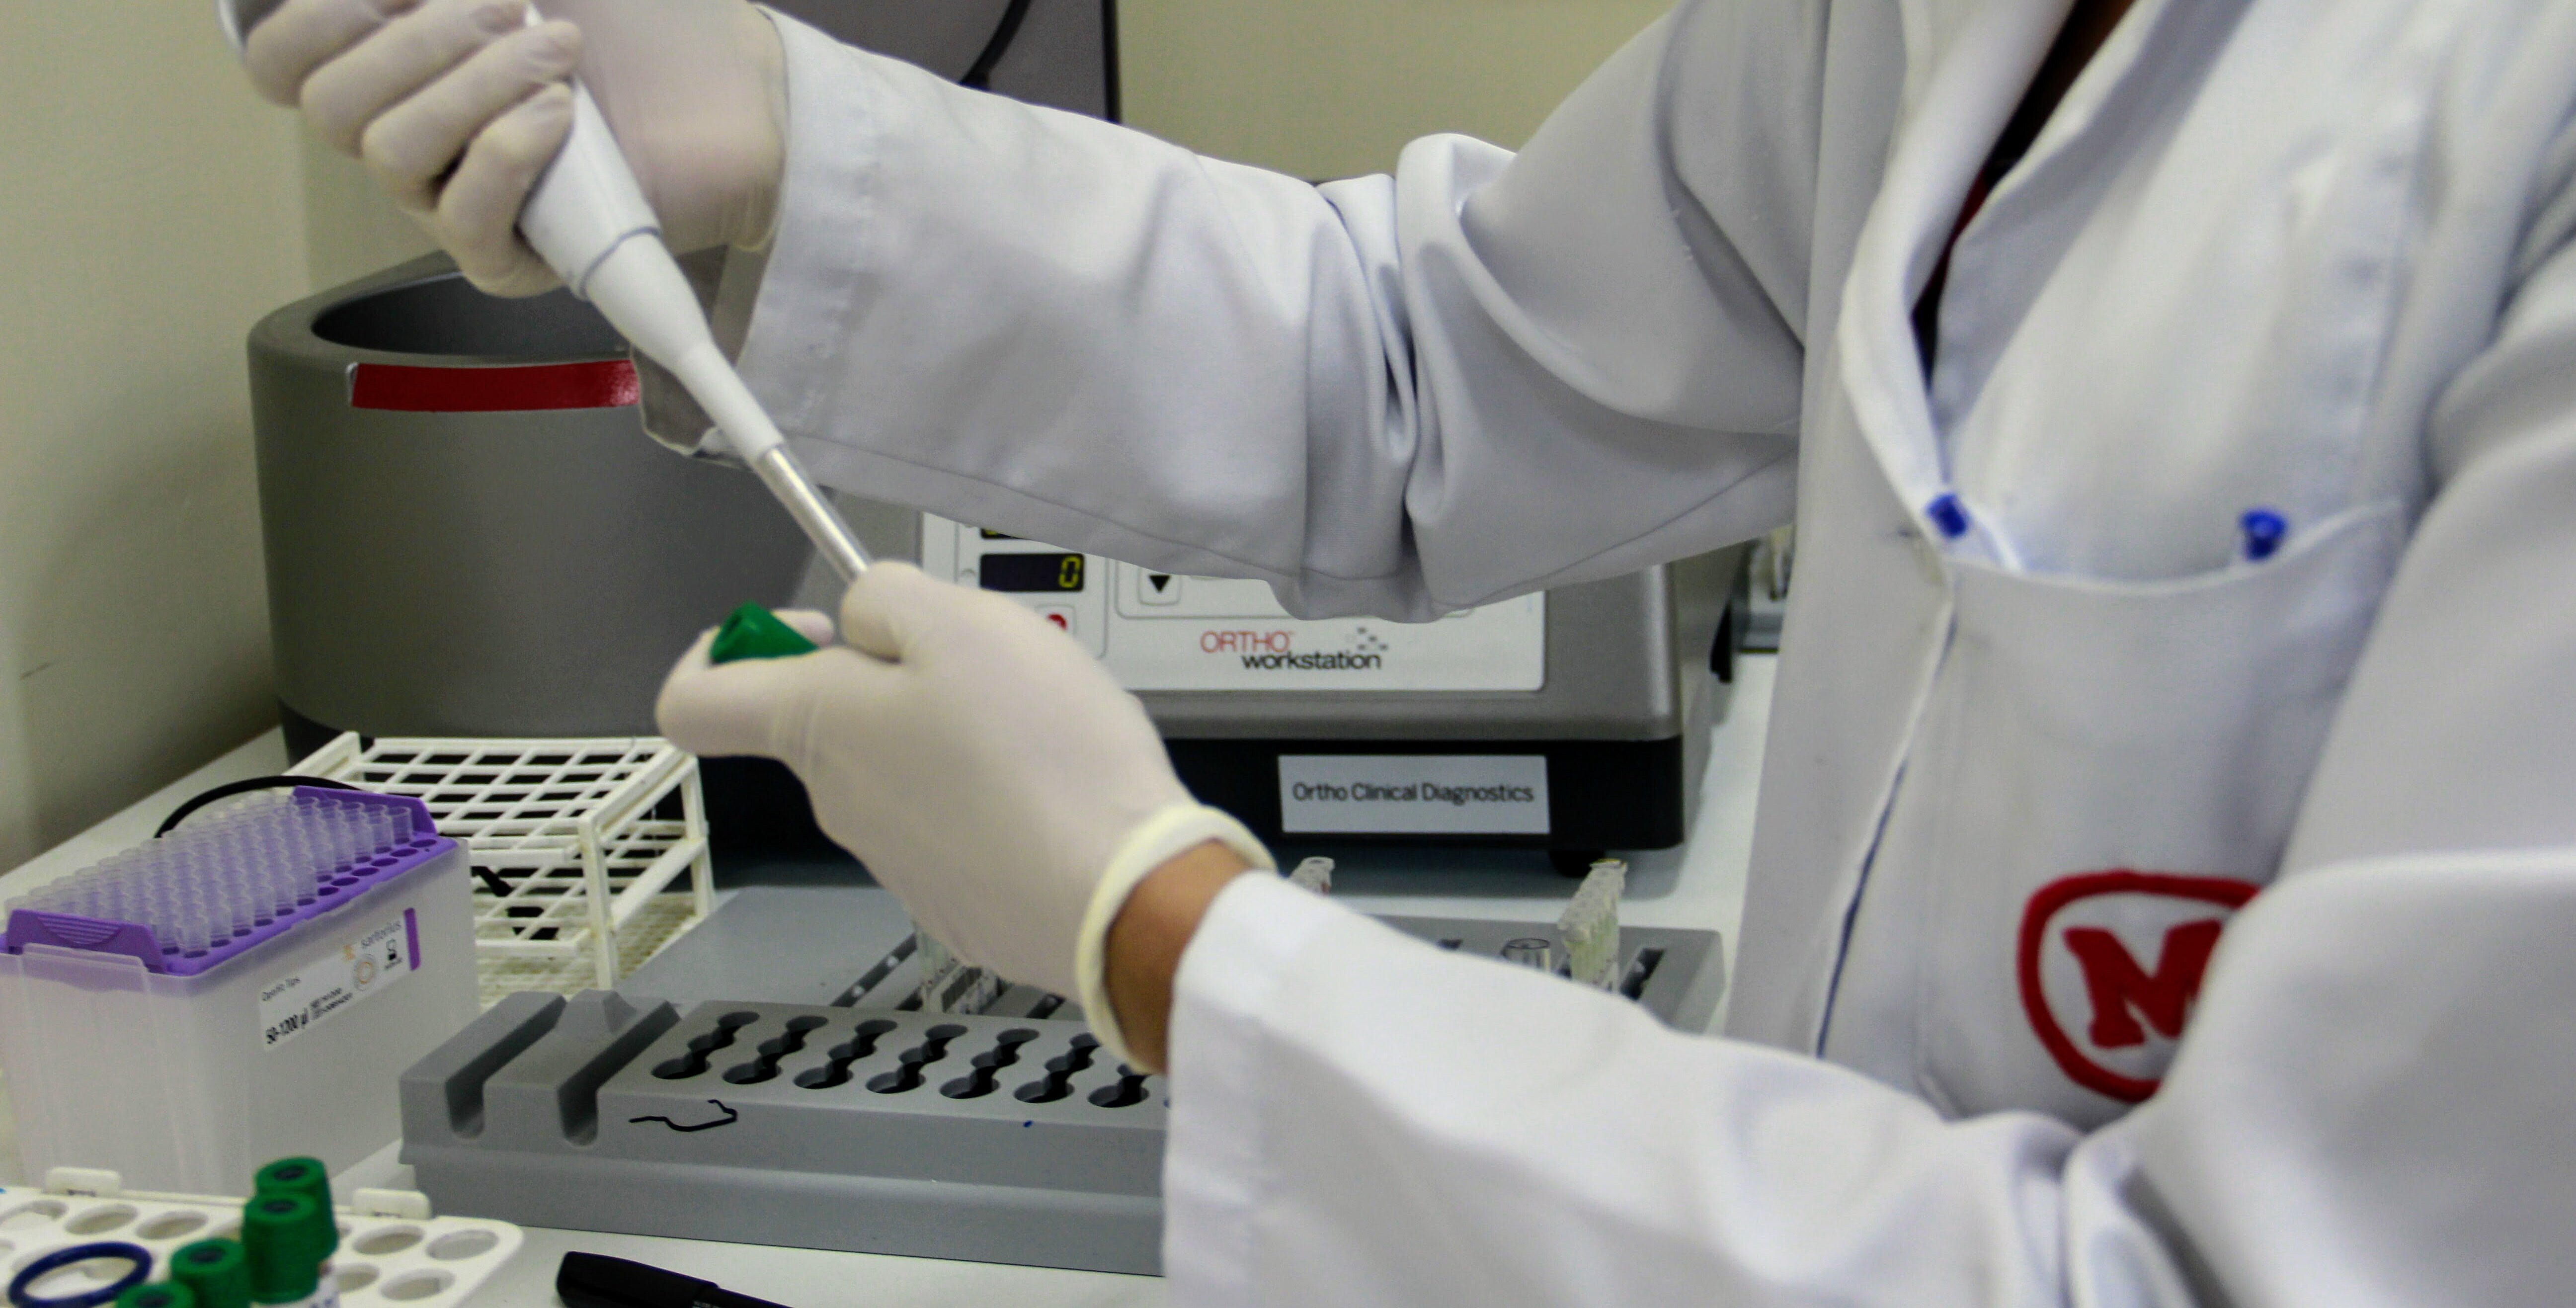 profissional de laboratório com jaleco branco com símbolo do Mackenzie em vermelho, manipulando uma pipeta de laboratório